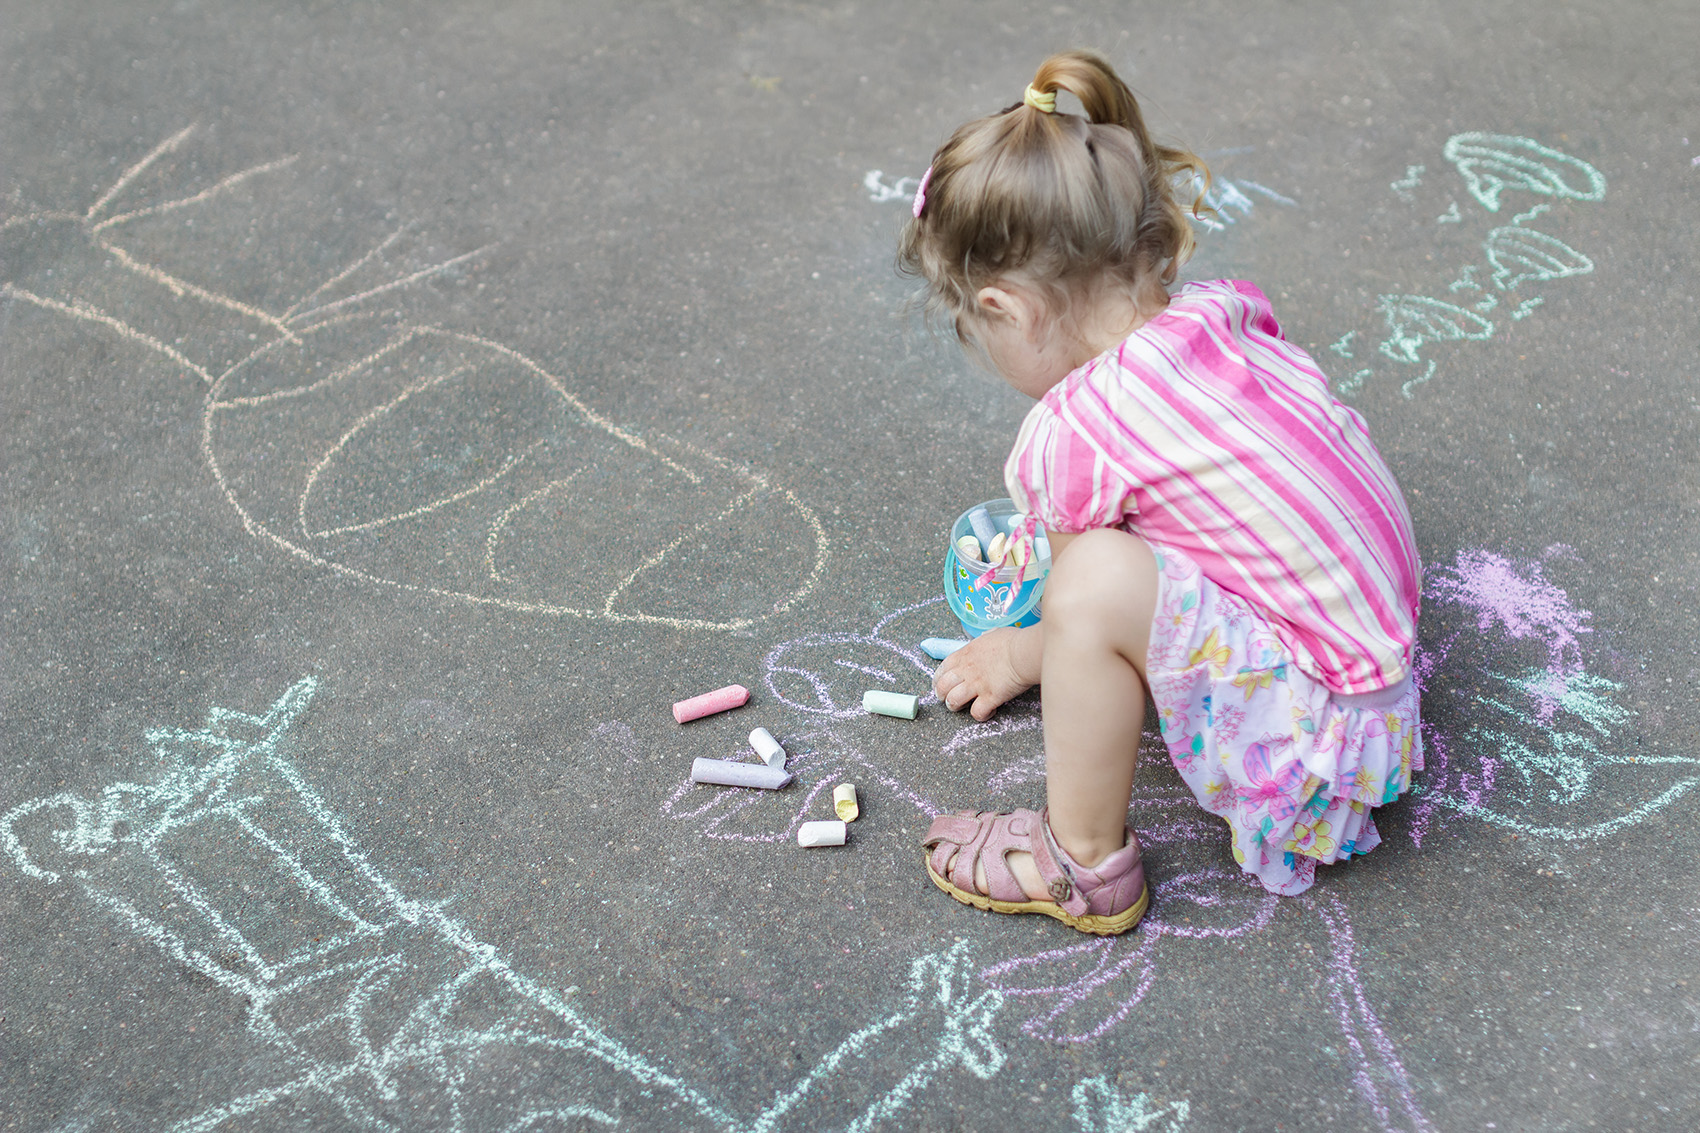 Flicka i förskoleålder ritar med färgglada kritor på asfalten på förskolans skolgård